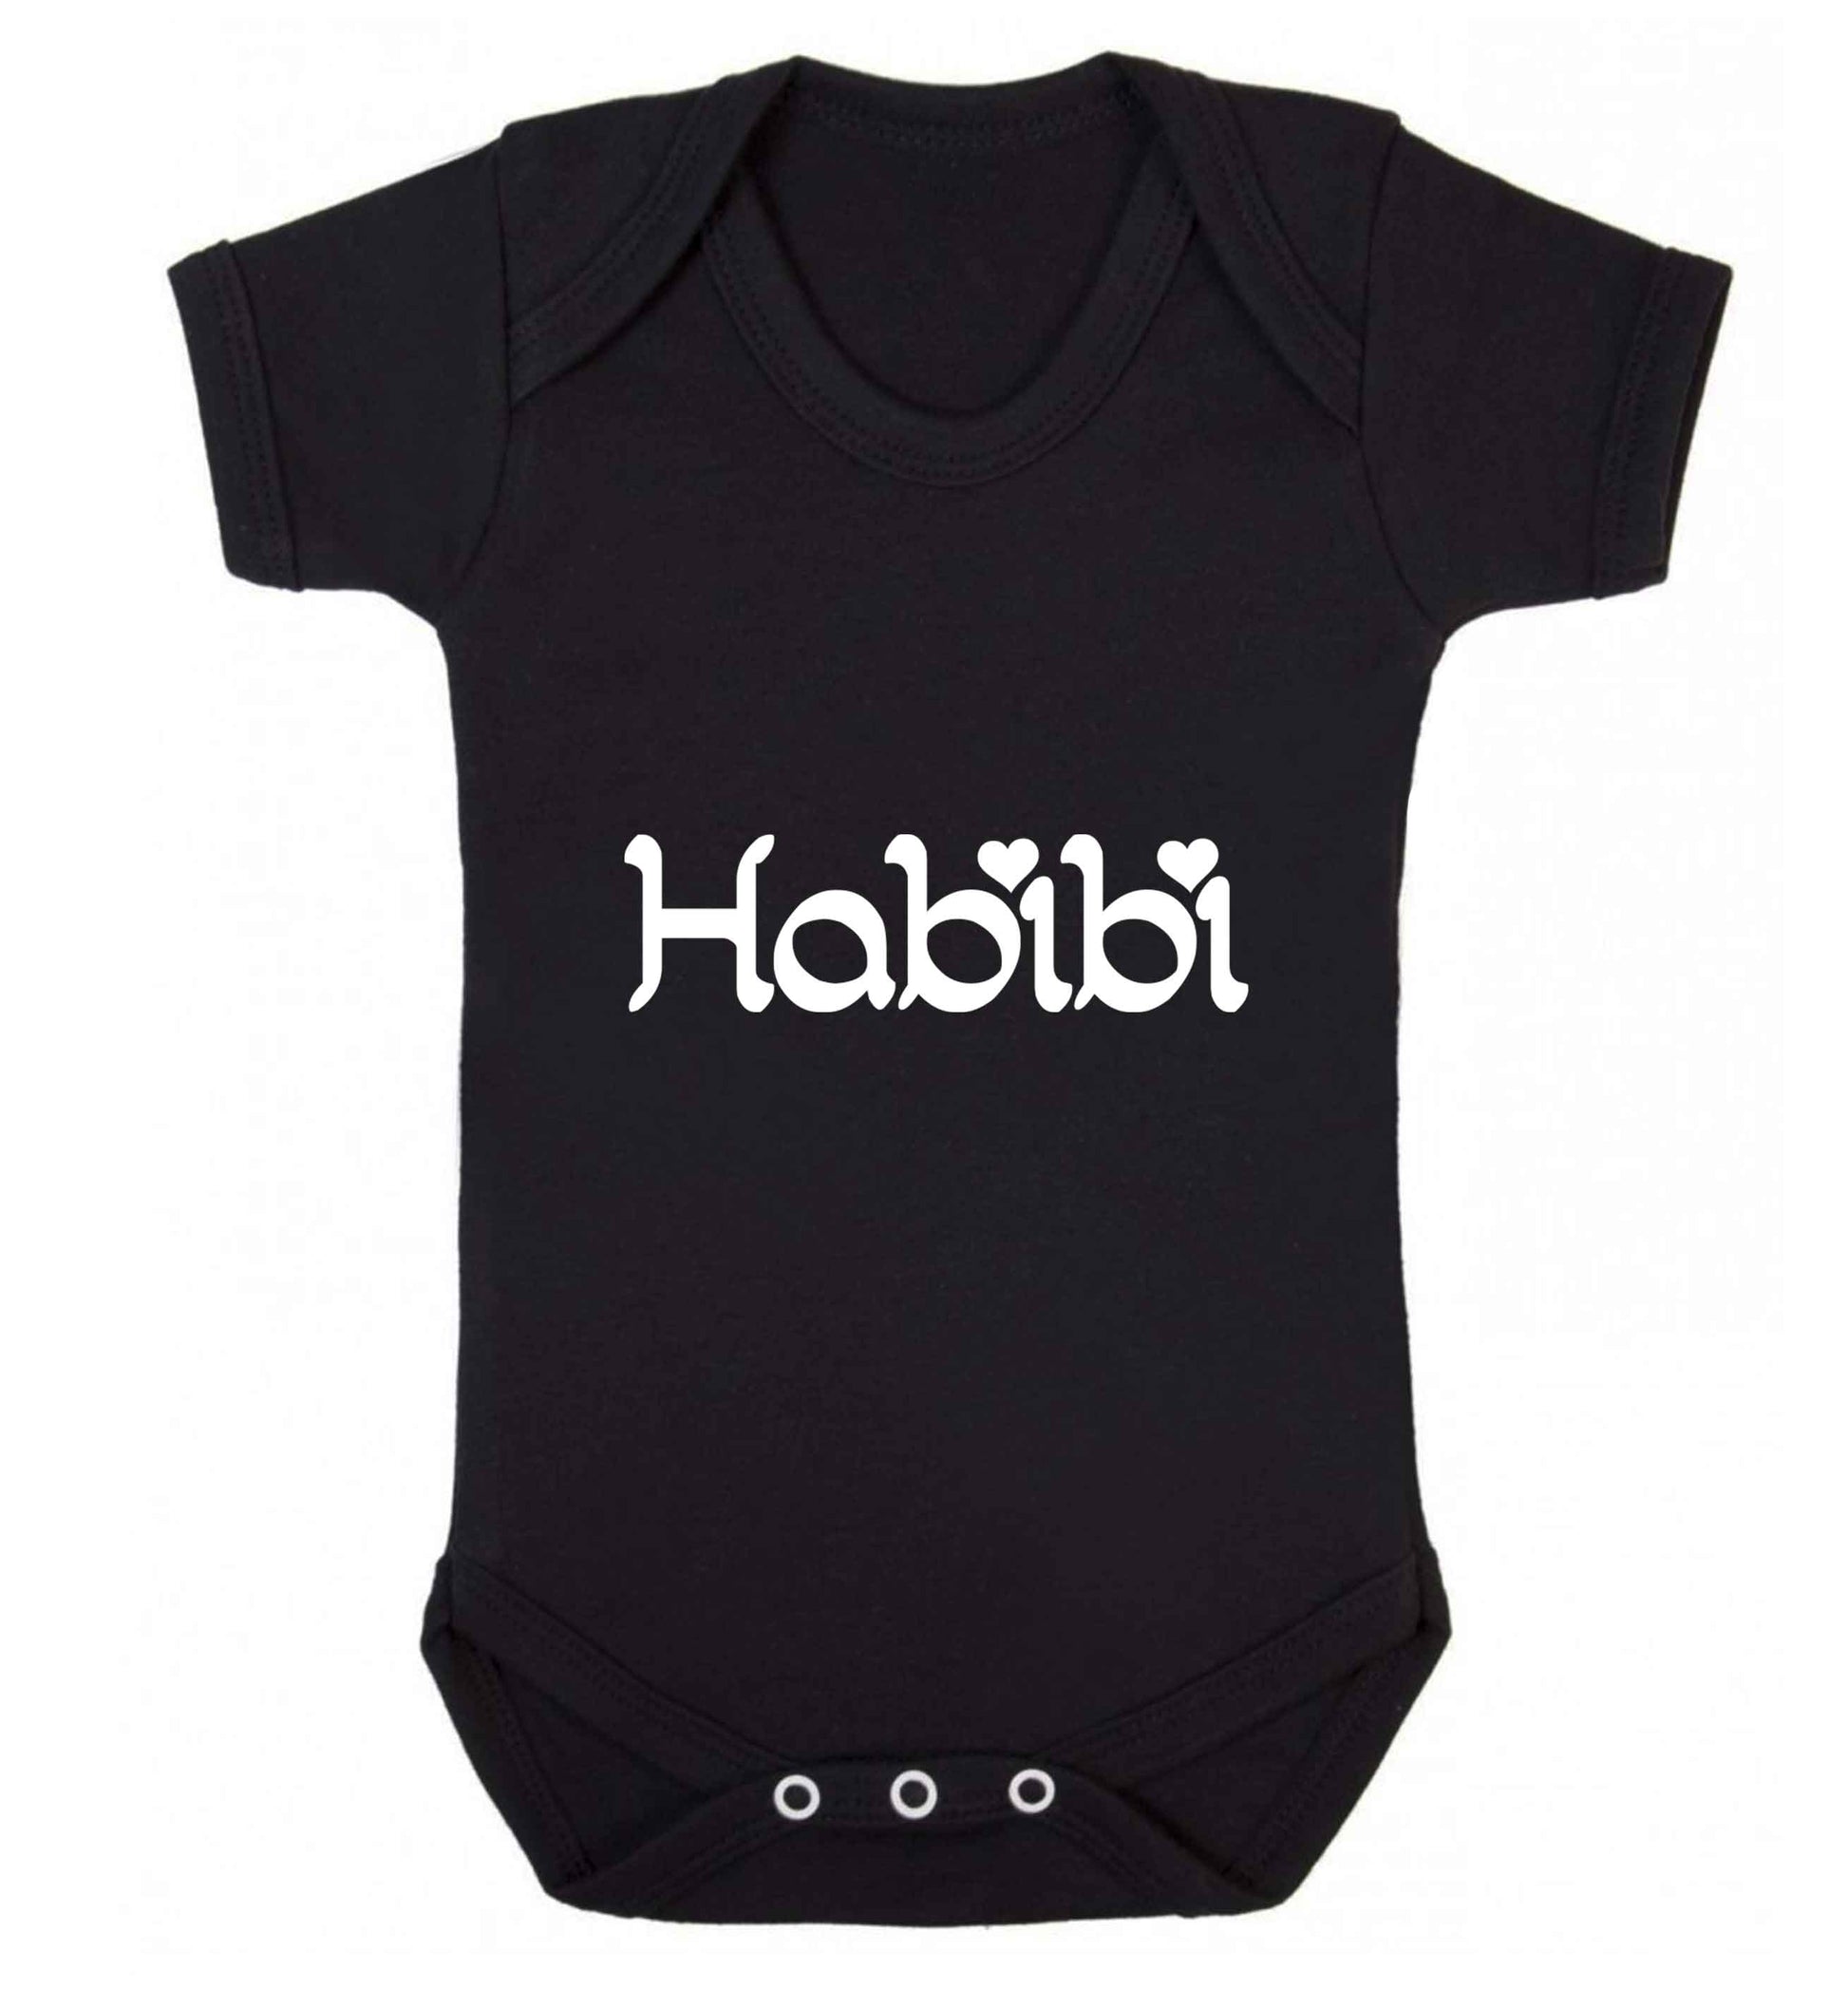 Habibi baby vest black 18-24 months